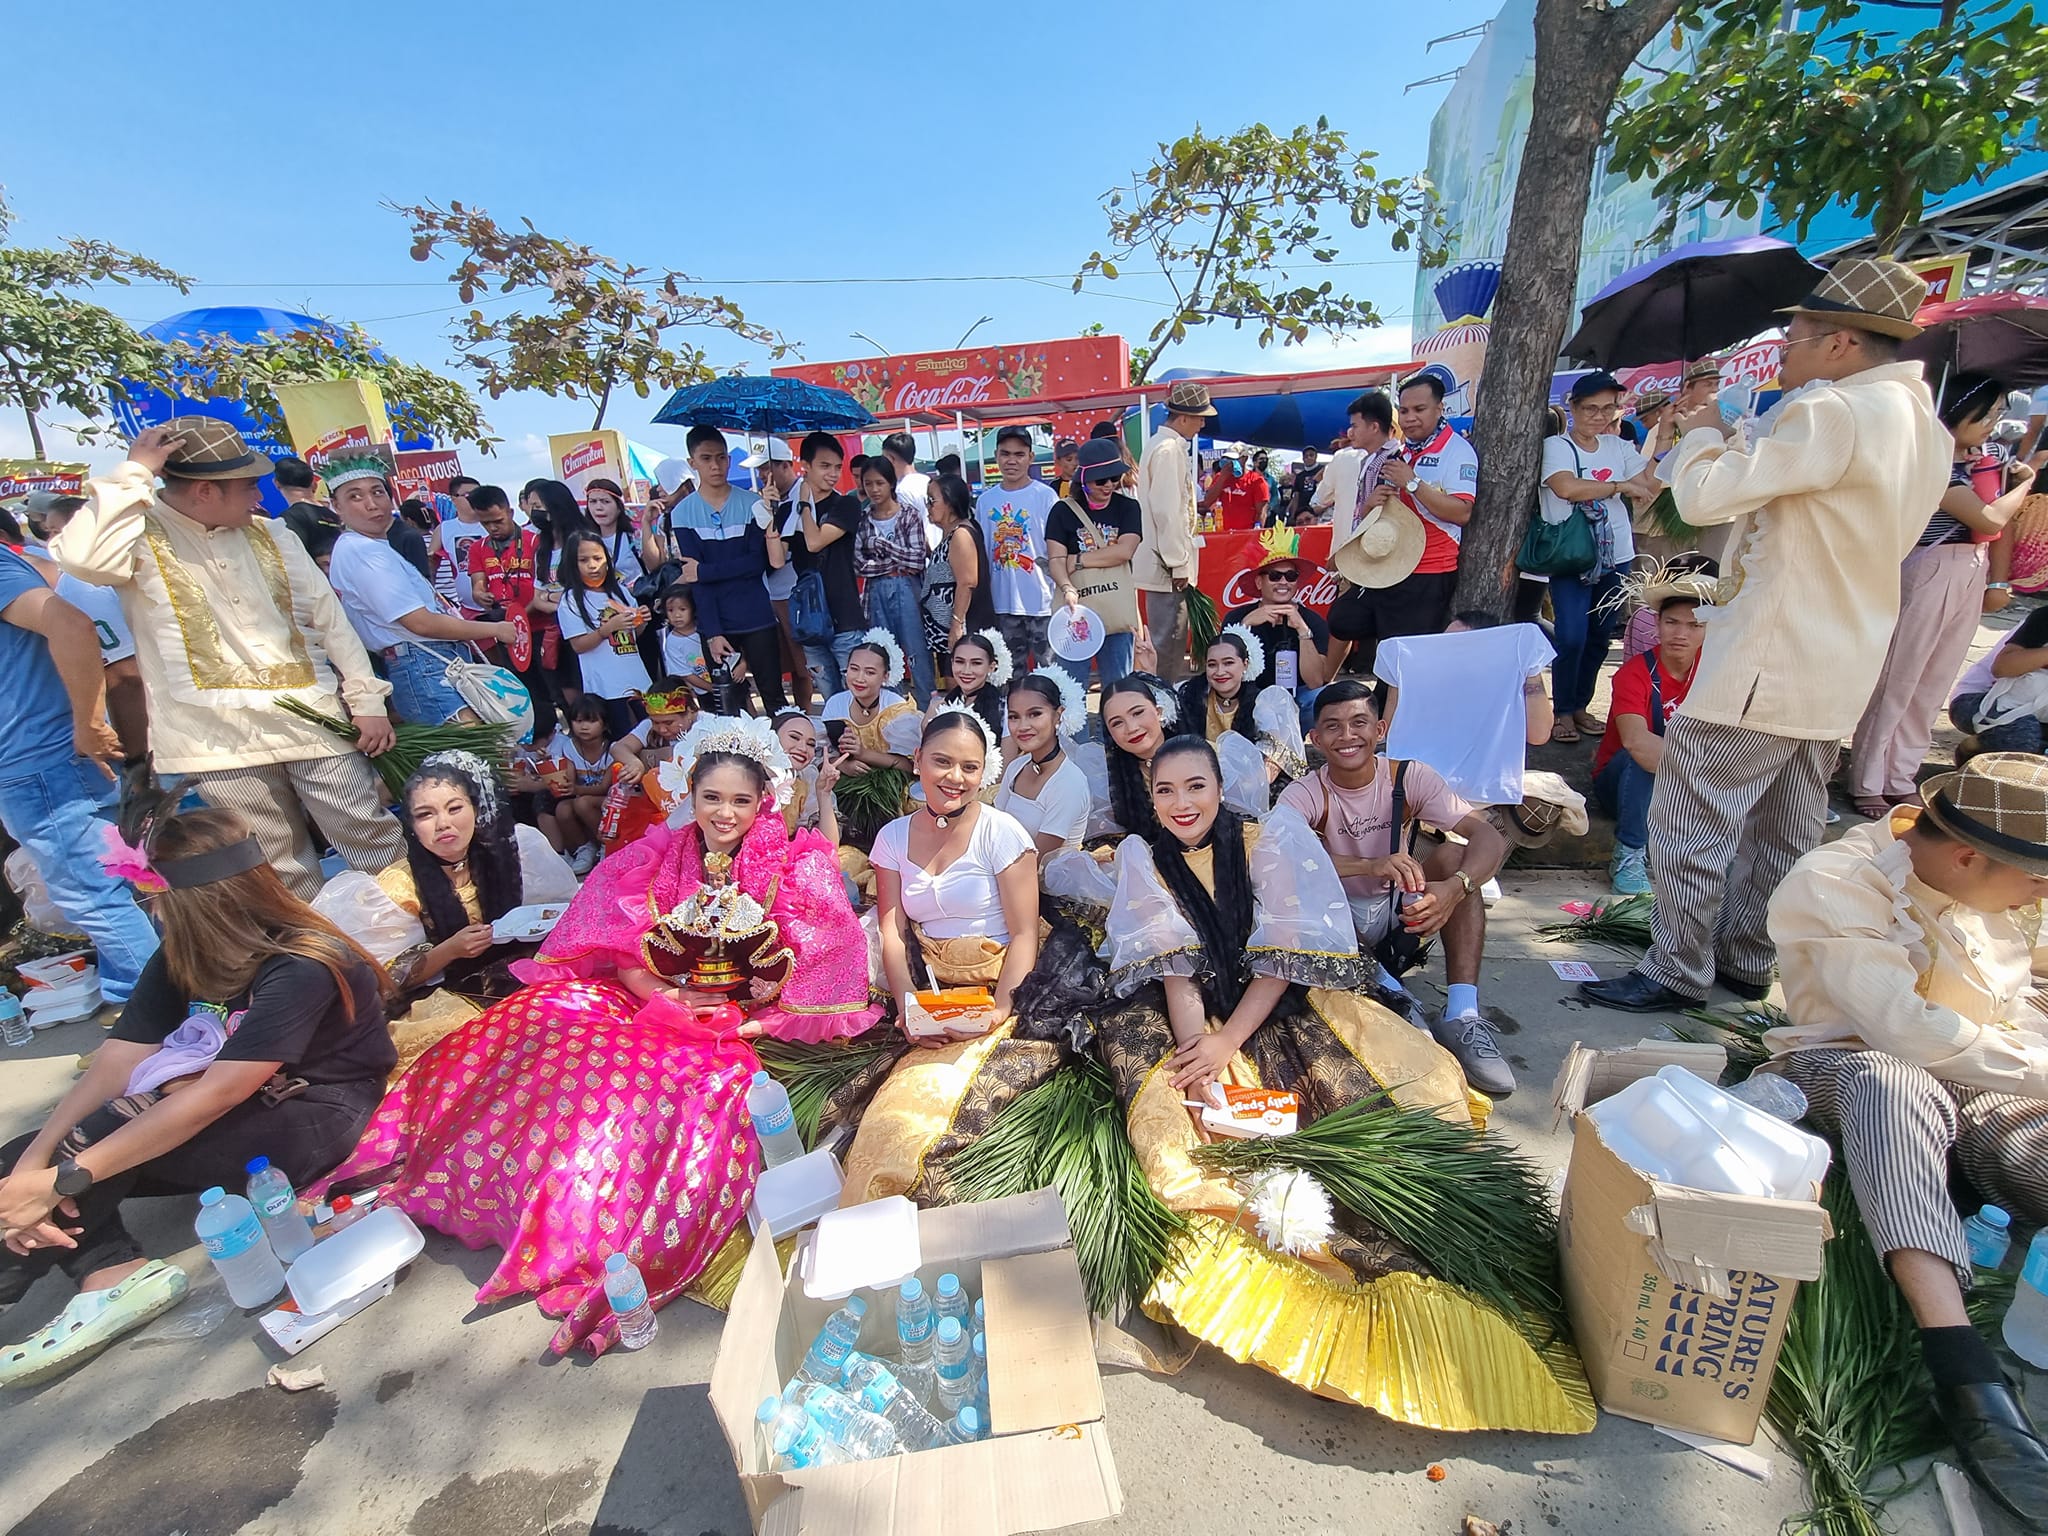 יפות פיליפיניות נחות לקראת ההופעה בקרנבל סנולוג שהוא חג דתי שהפך לקרנבל מרשים